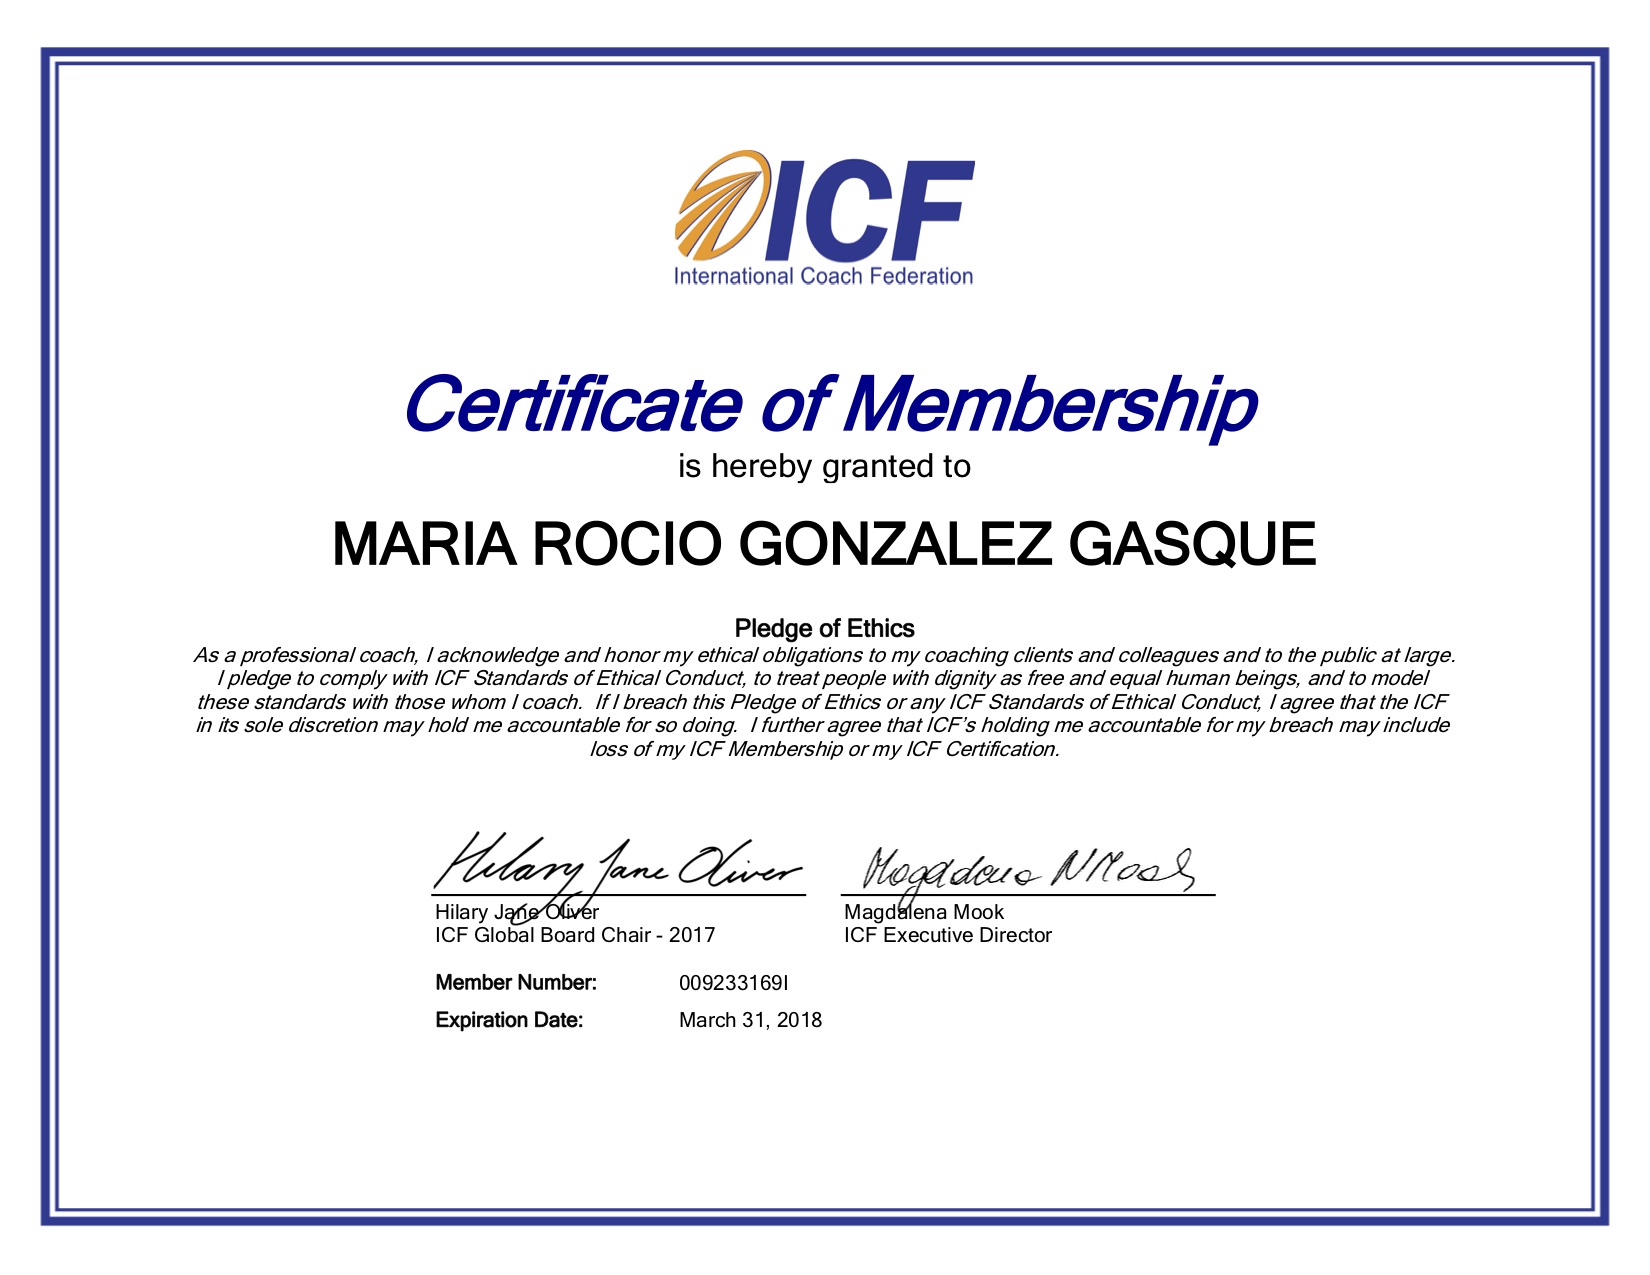 Membership_Certificate